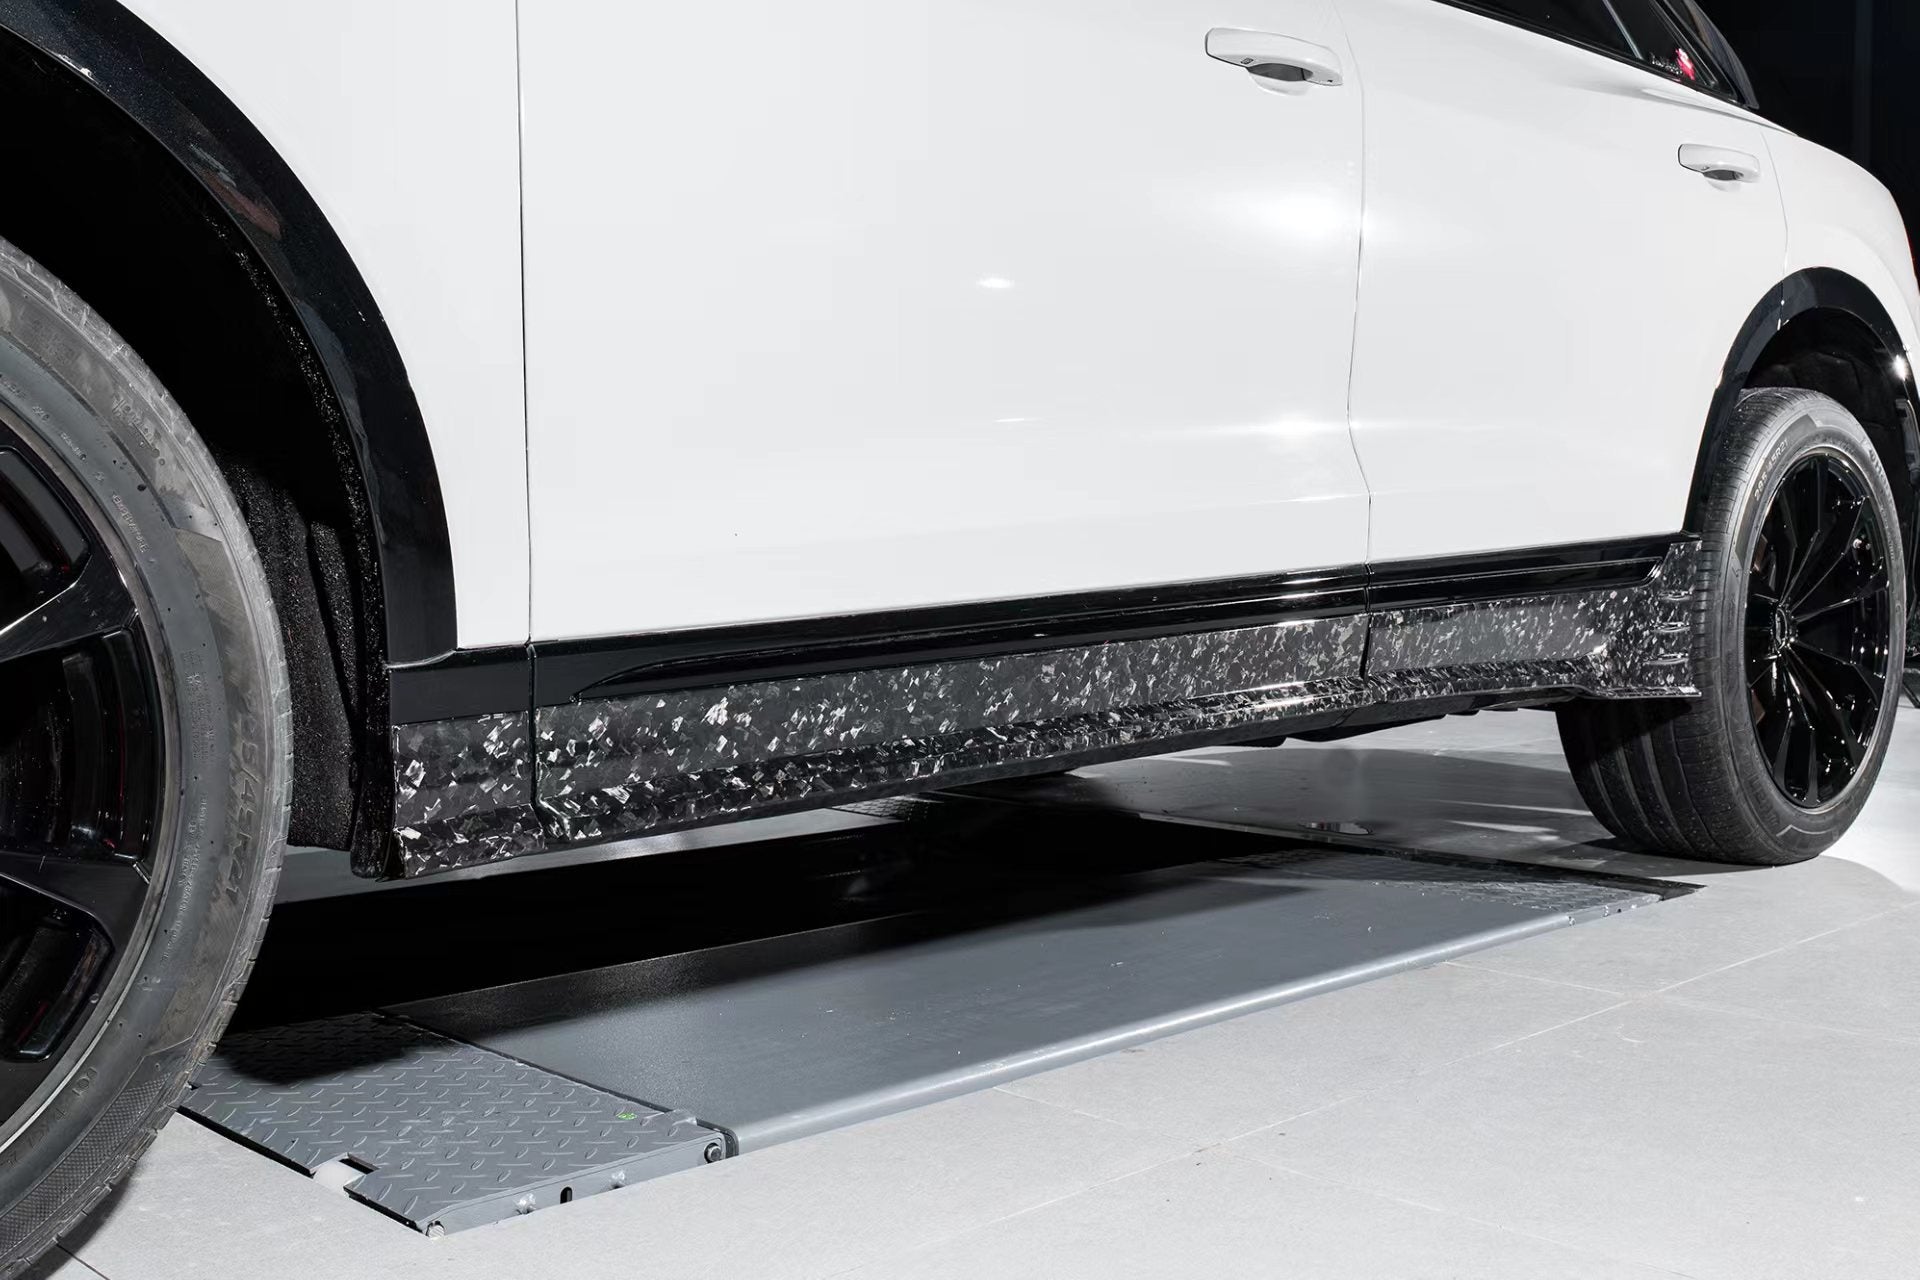 Karbel Carbon Pre-preg Carbon Fiber Side Skirts For Audi SQ8 Q8 S-line 2020-2022